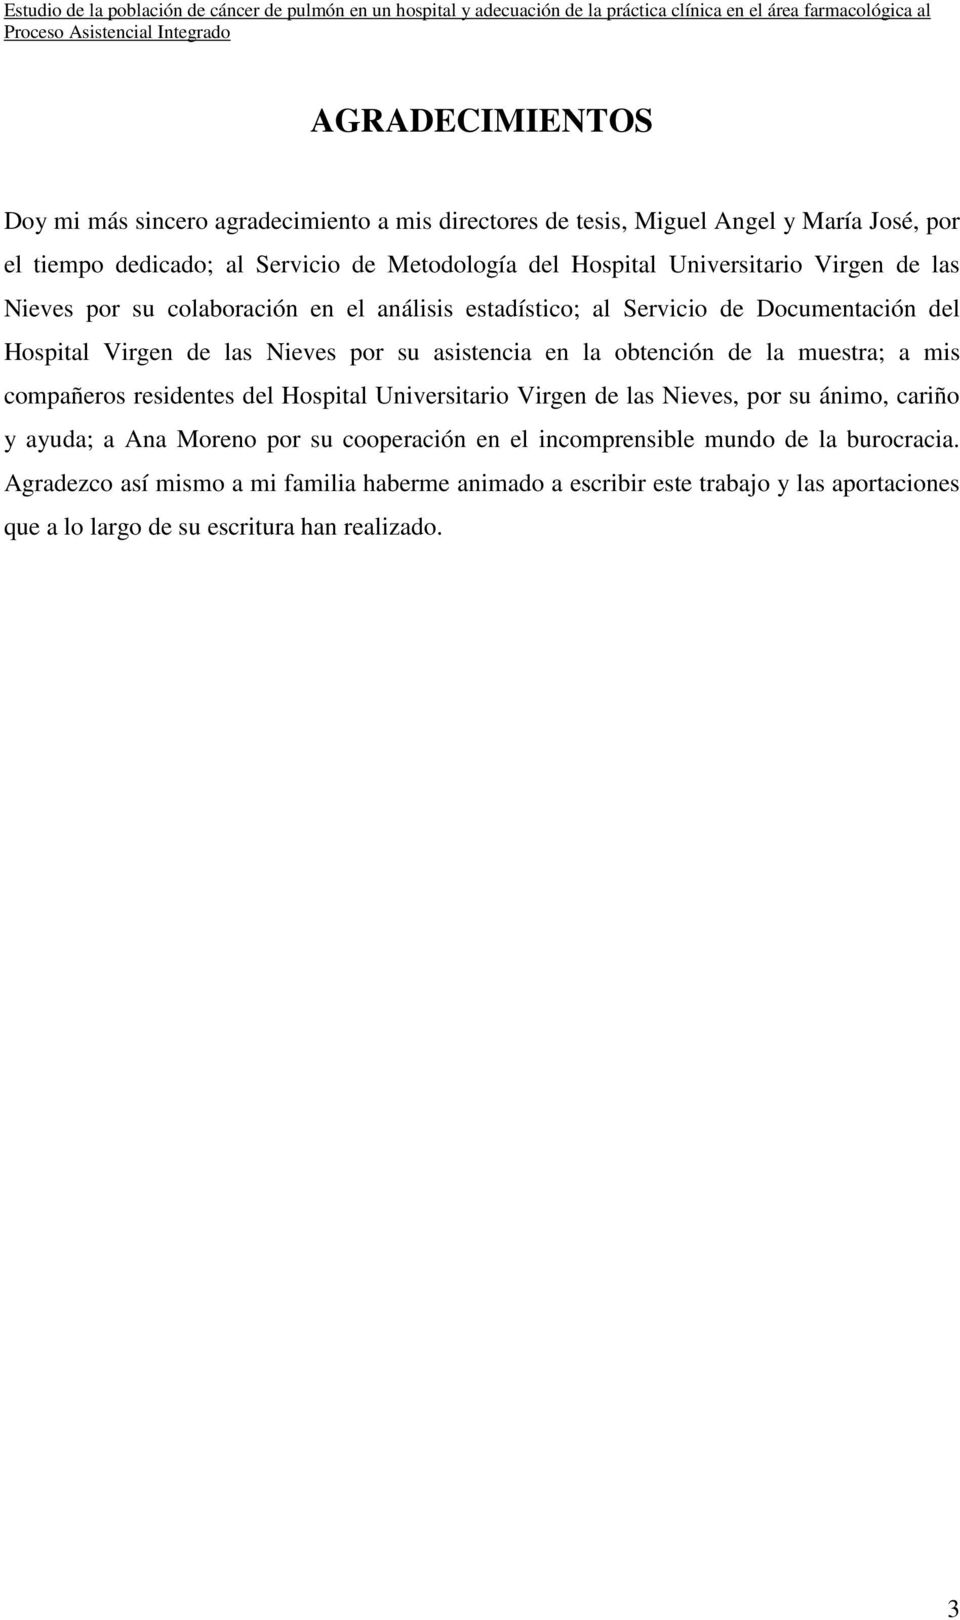 obtención de la muestra; a mis compañeros residentes del Hospital Universitario Virgen de las Nieves, por su ánimo, cariño y ayuda; a Ana Moreno por su cooperación en el